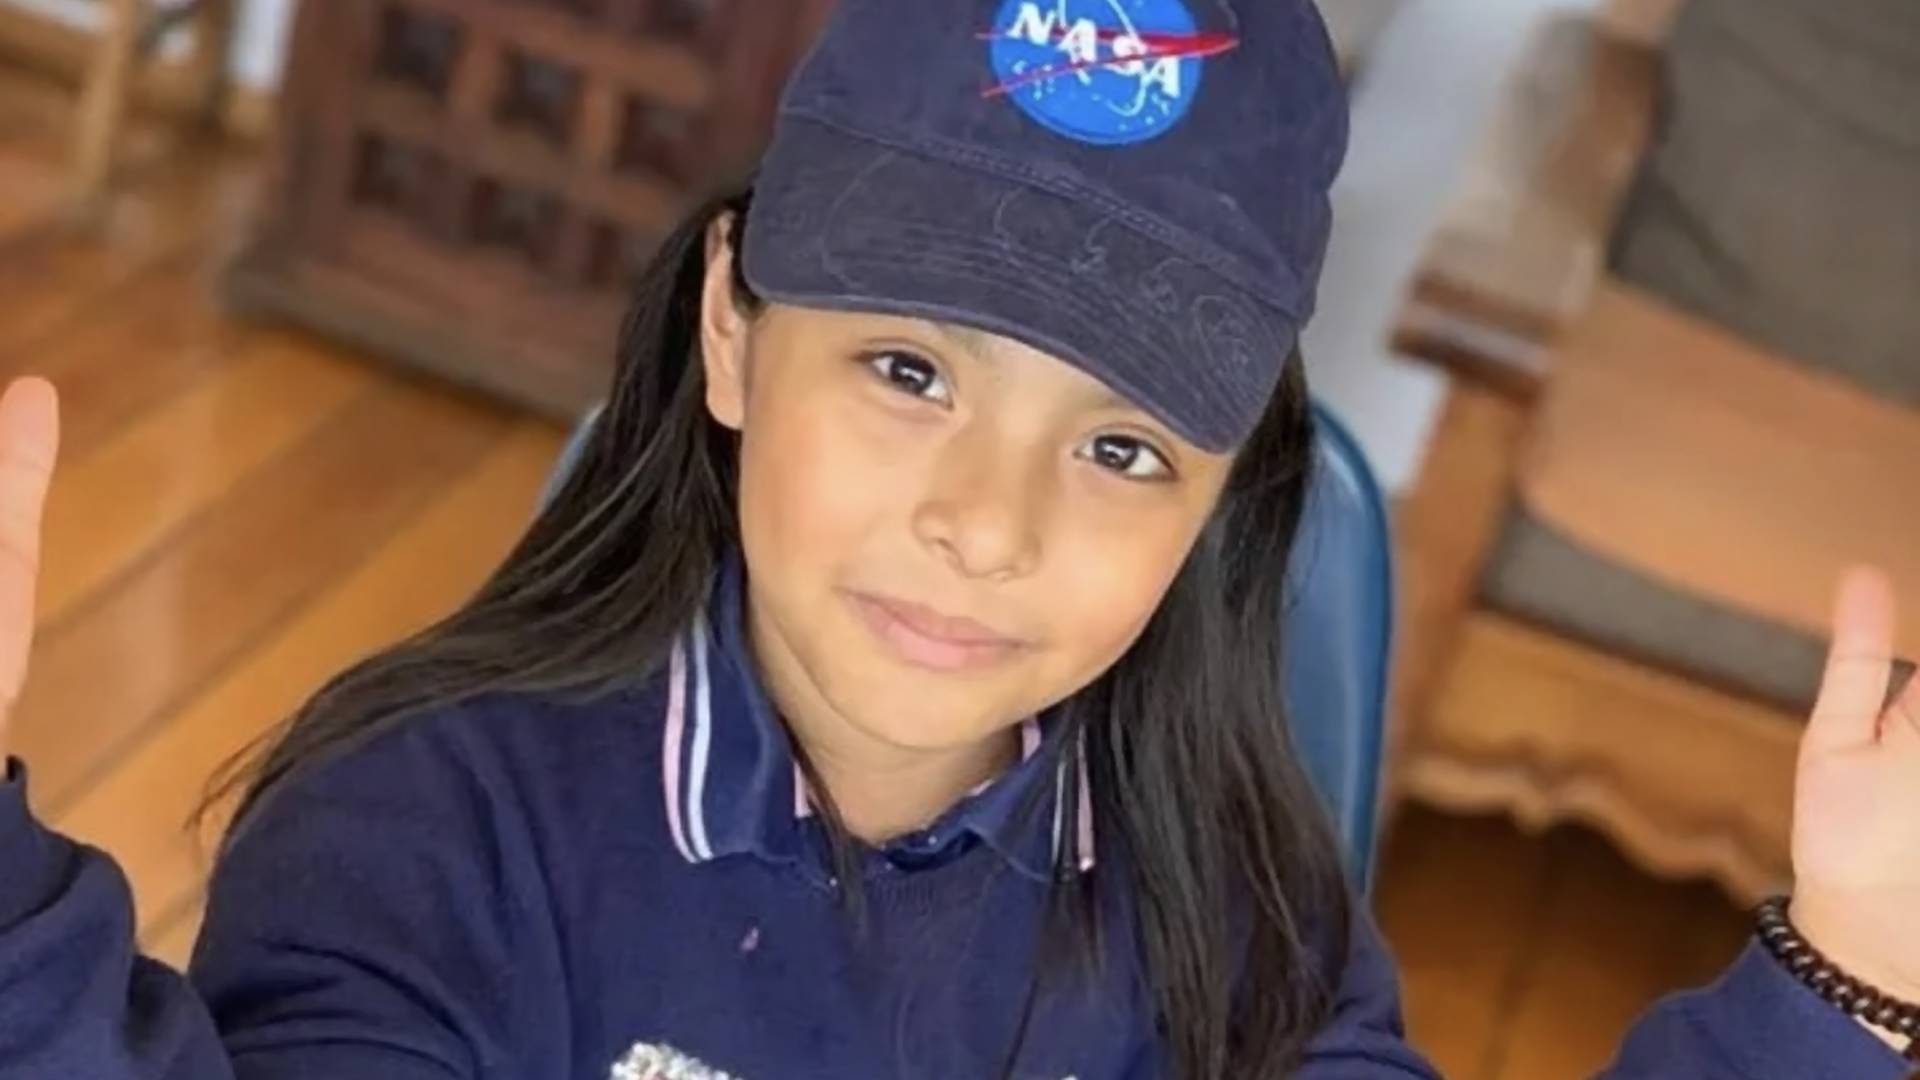 Ma 11 lat, a iloraz inteligencji wyższy, niż Einstein. Dziewczynka z autyzmem chce pracować w NASA